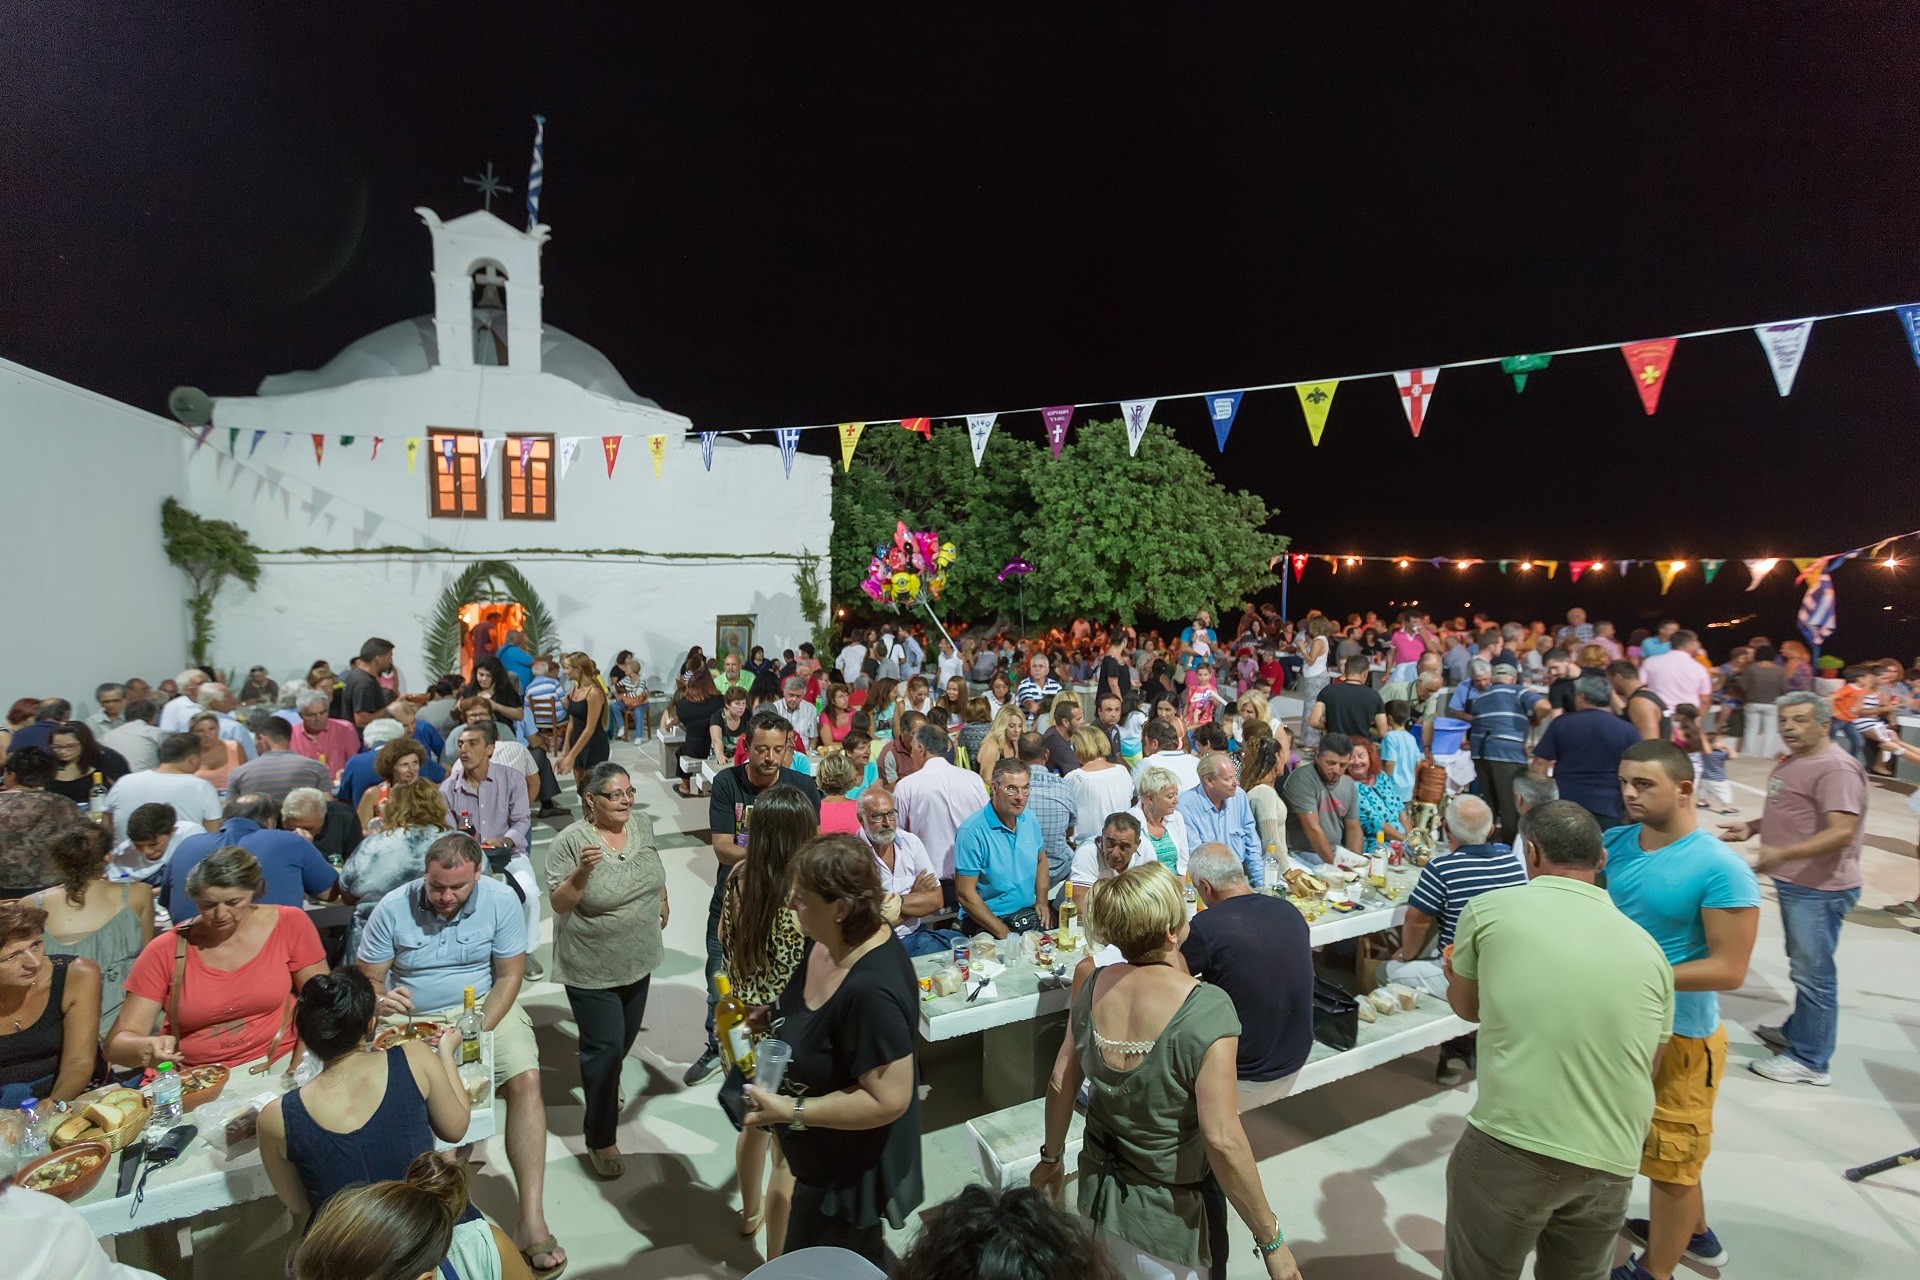 ludzie pijący i jedzący przy stołach przed białym kościołem udekorowanym kolorowymi proporcami